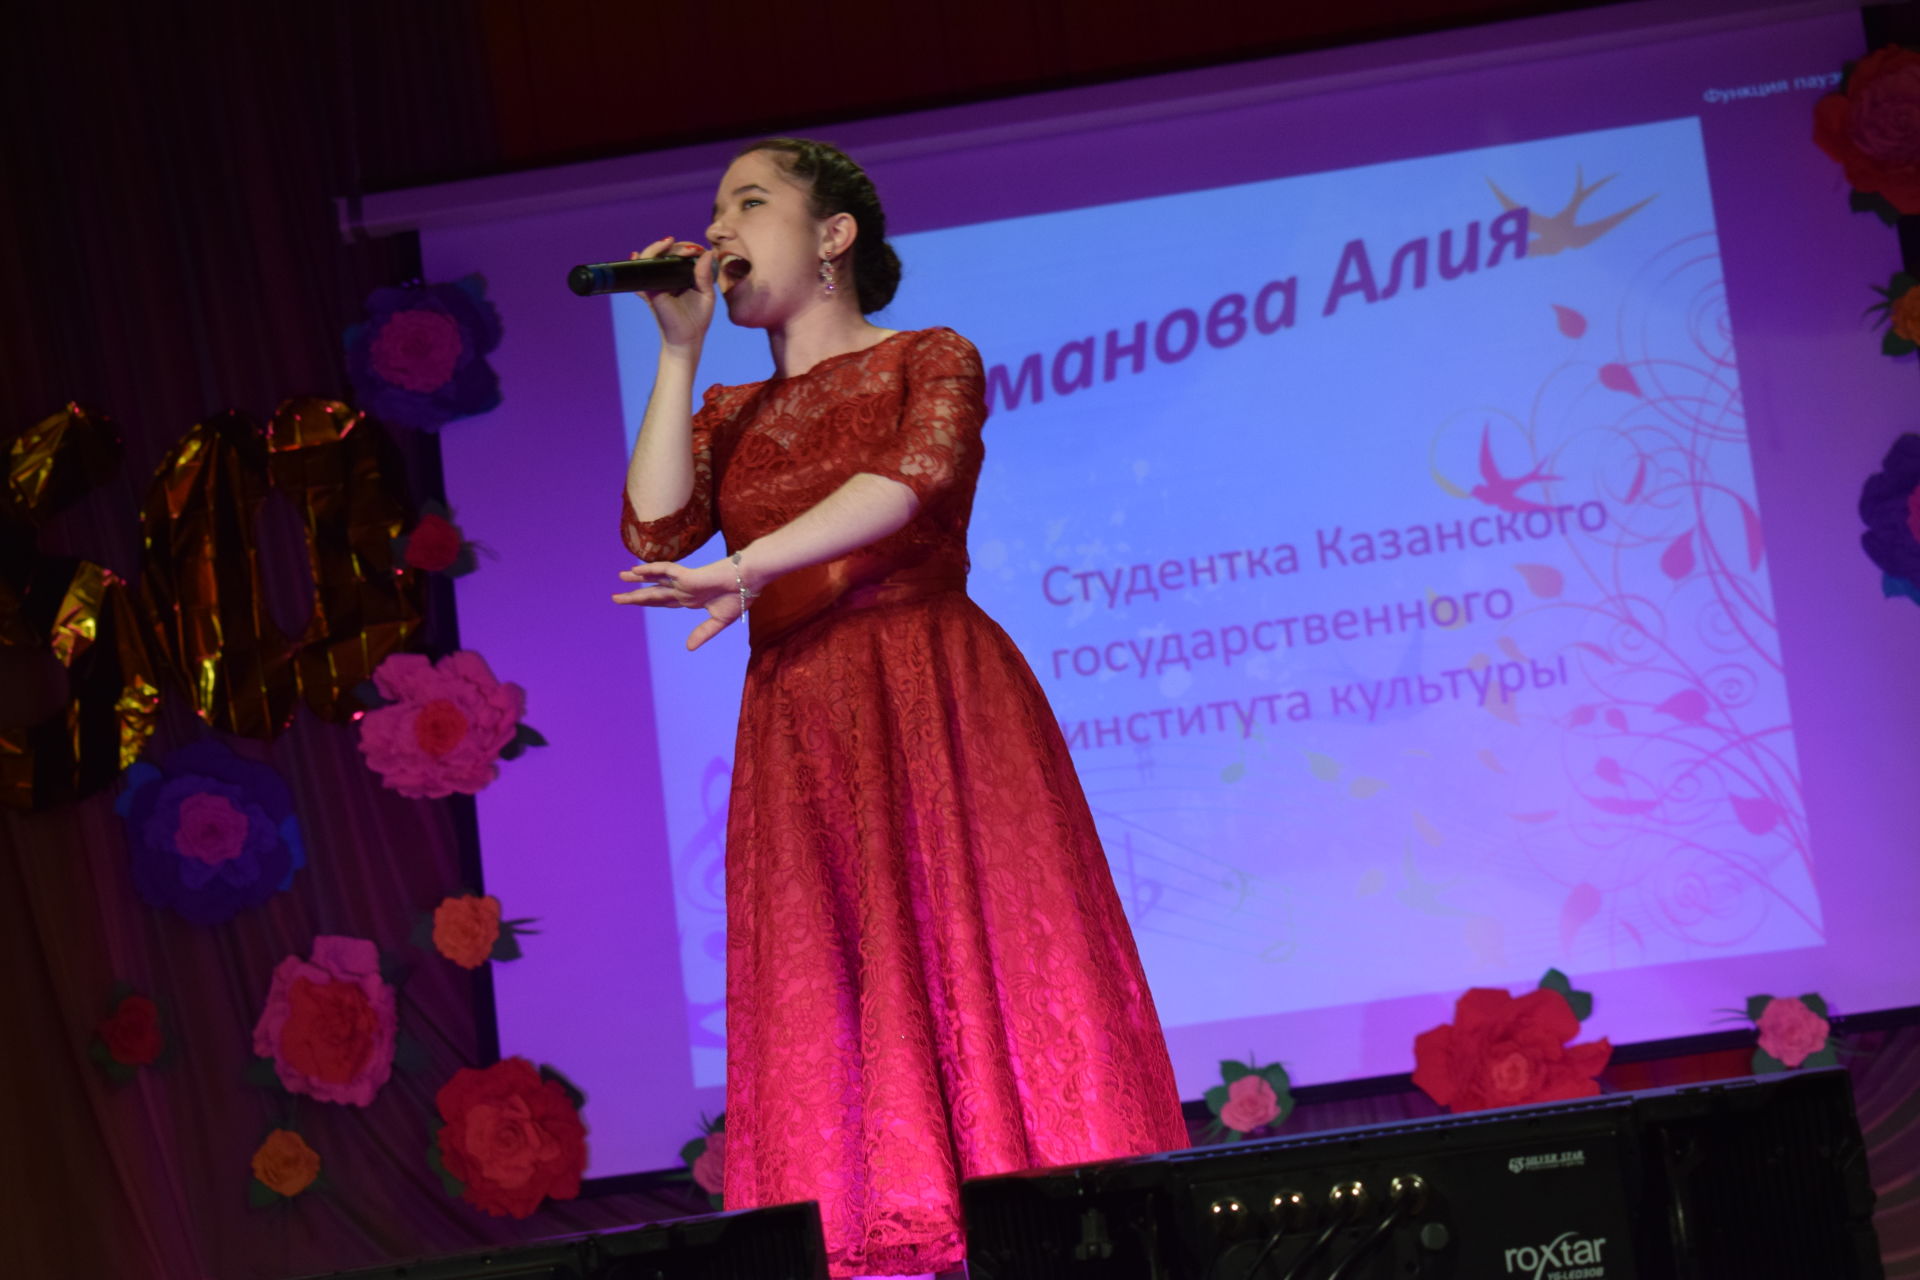 Аксубаевская Школа искусств: путь длиною в 50 лет